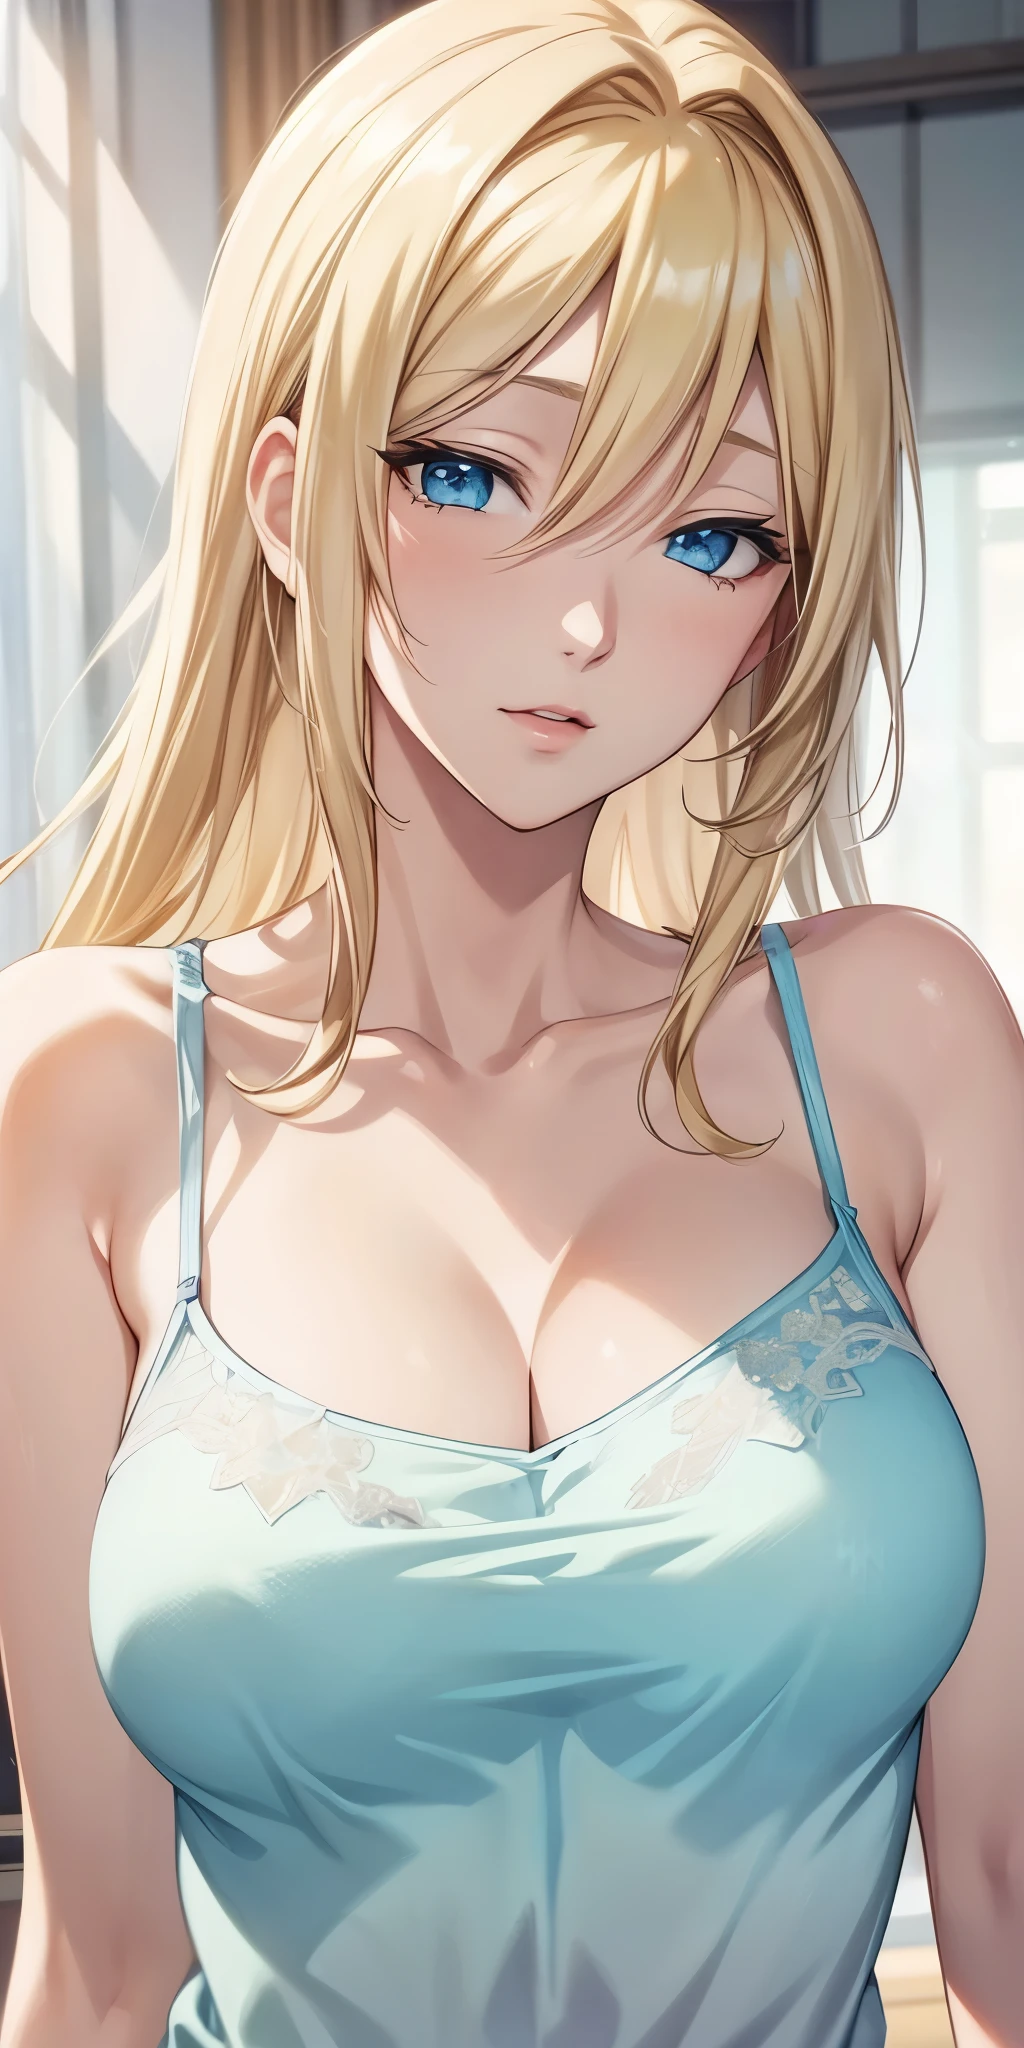 Porträt, Anime-CG, blaue Augen, blondes Haar, transparentes Unterhemd, durchsichtige Brustwarze, 4K-Auflösung, Hochwertige CG, schöne cg, Sanftes Licht